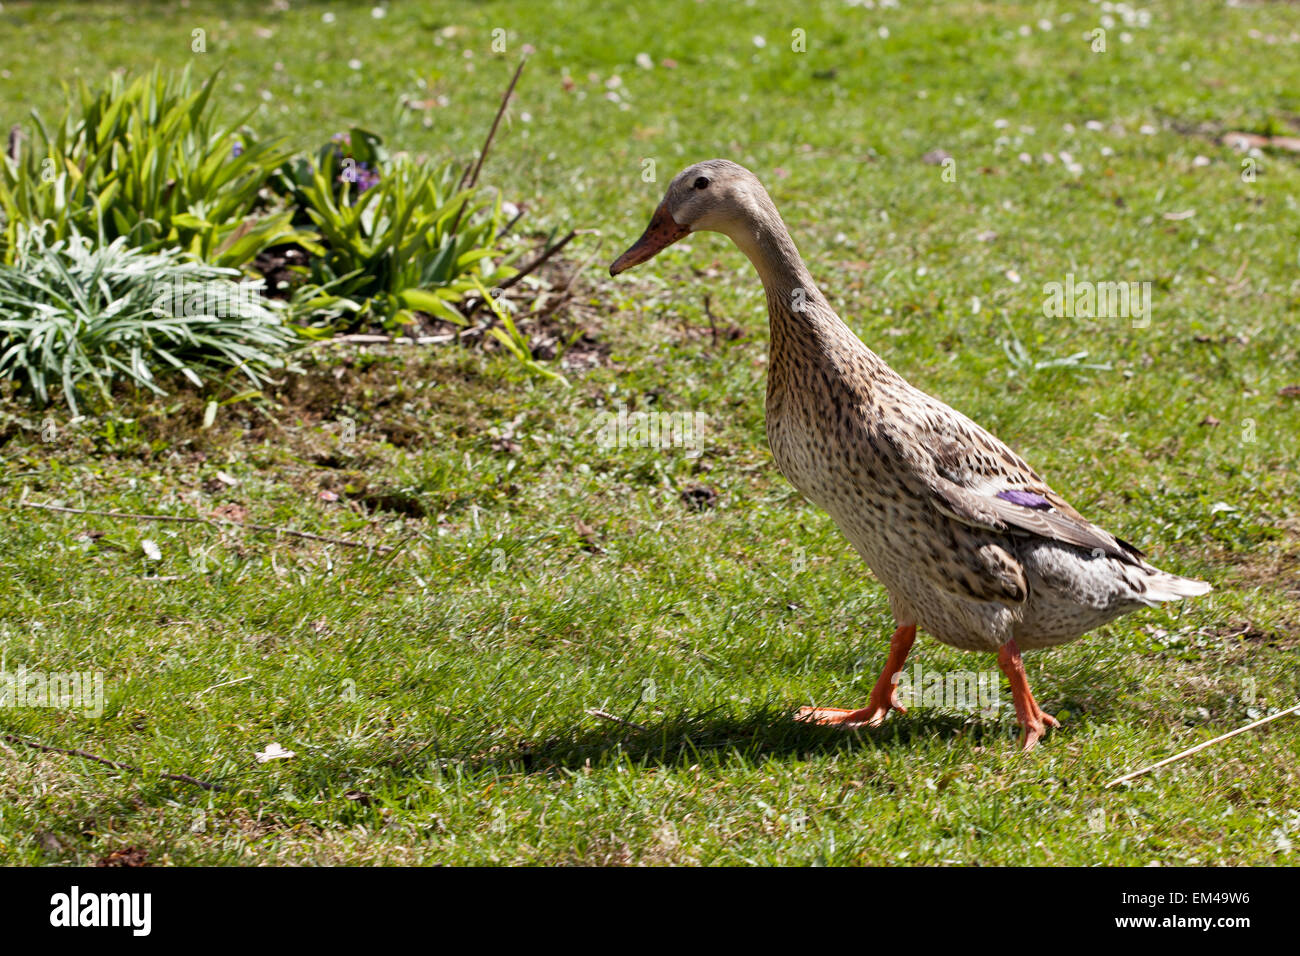 indian runner duck in the garden Stock Photo